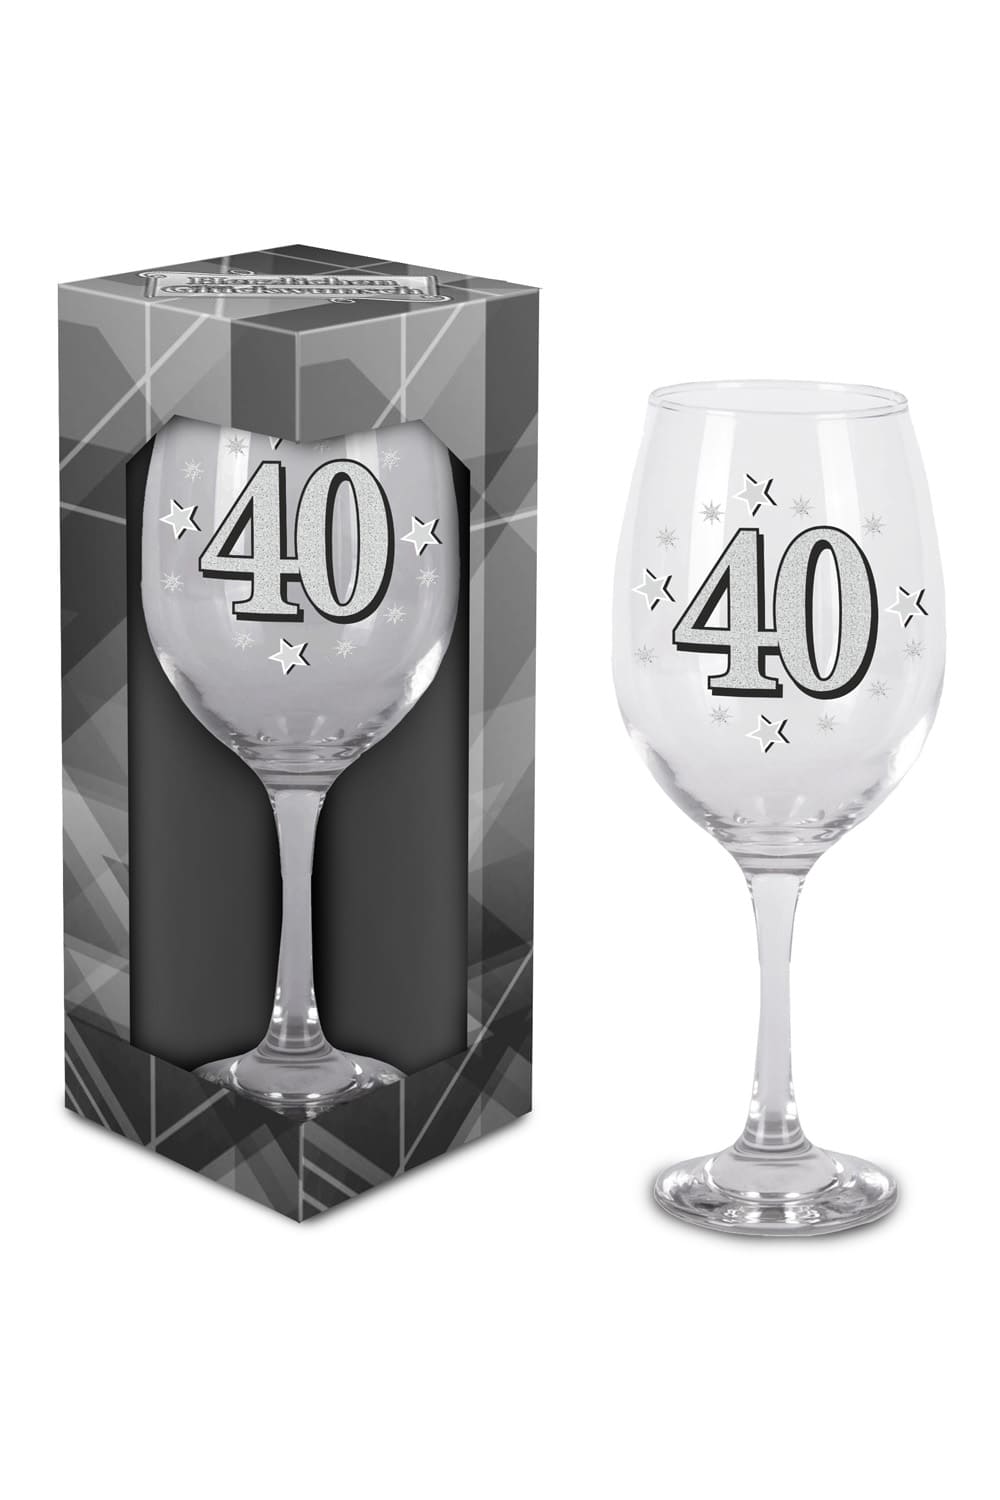 Dieses schoene Glas ist bedruckt mit der Zahl 40. Grosses Weinglas oder Cocktailglas zum 40. Geburtstag. Einzel verpackt in einem Geschenkkarton. Einfach ein kreatives Geschenk zum 40. Geburtstag oder zu einem Jubilaeum! 